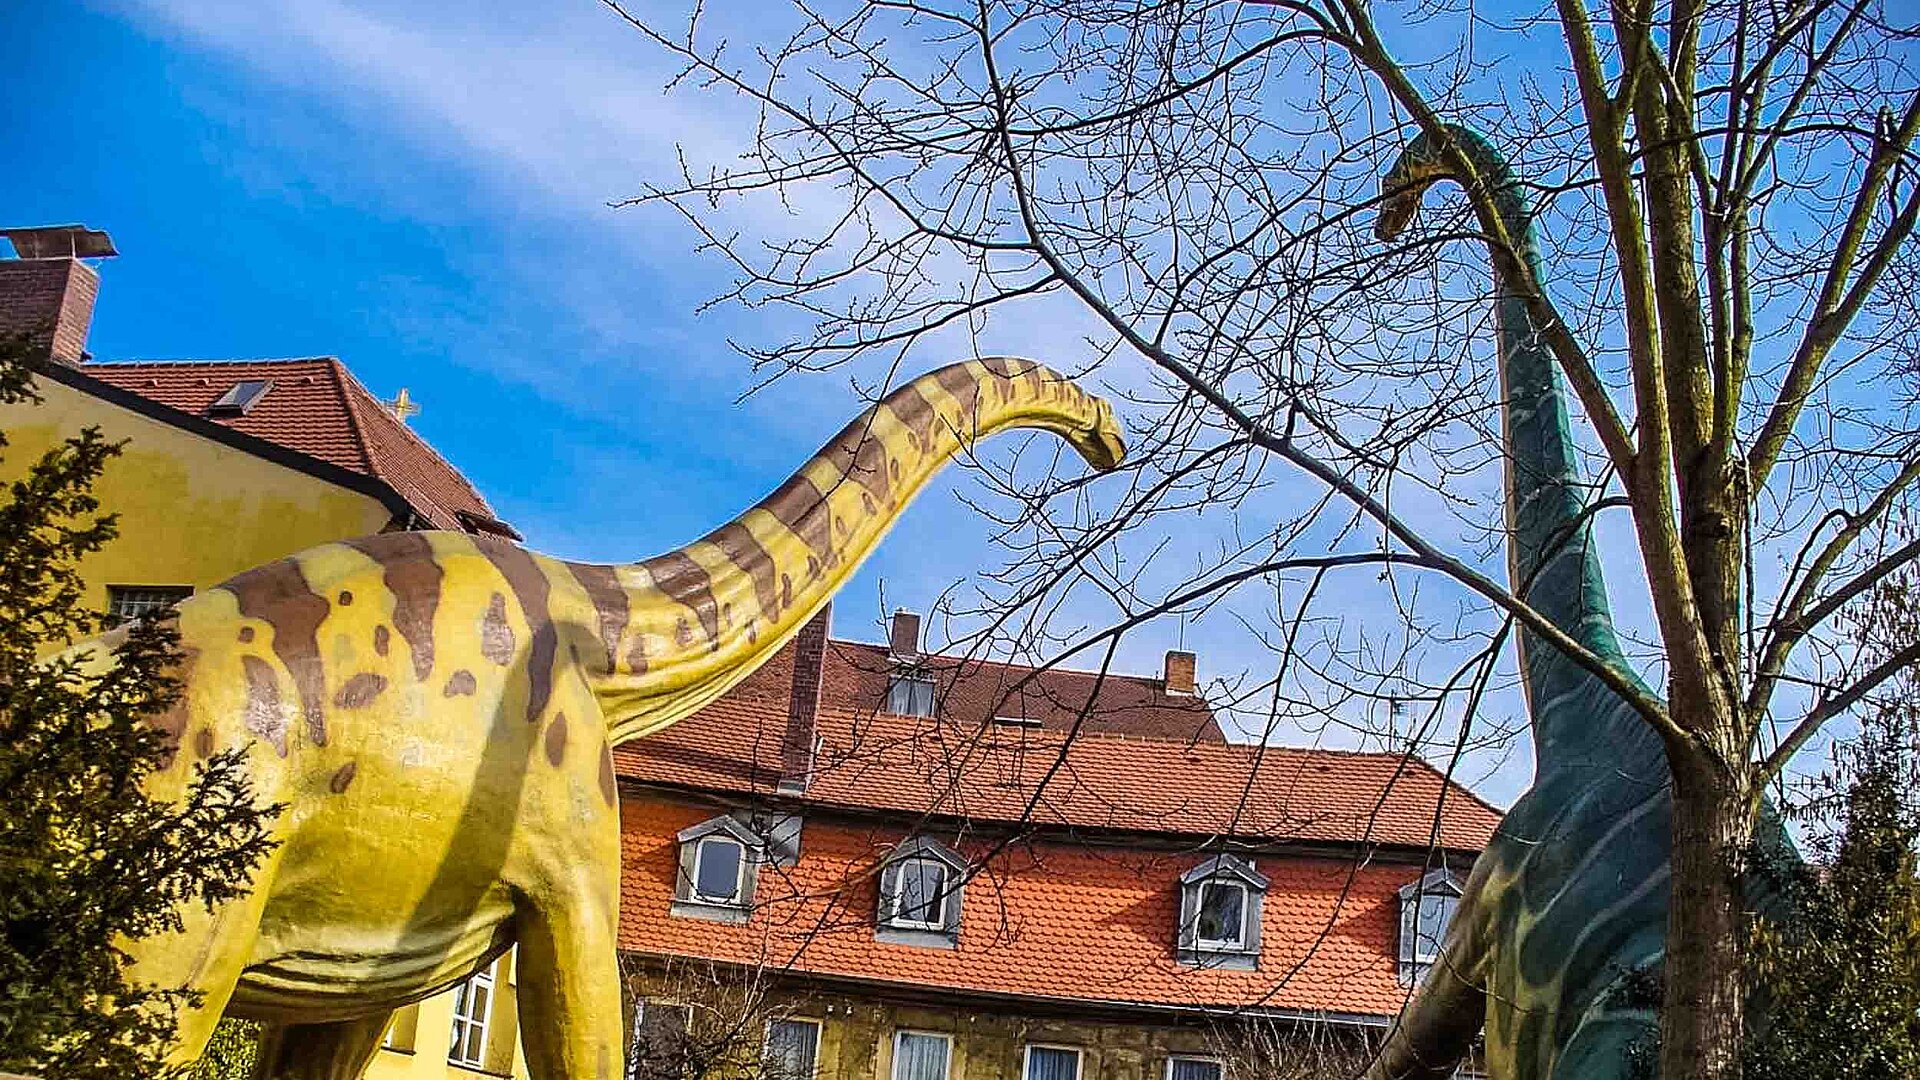 Urweltmuseum Bayreuth Dinogarten